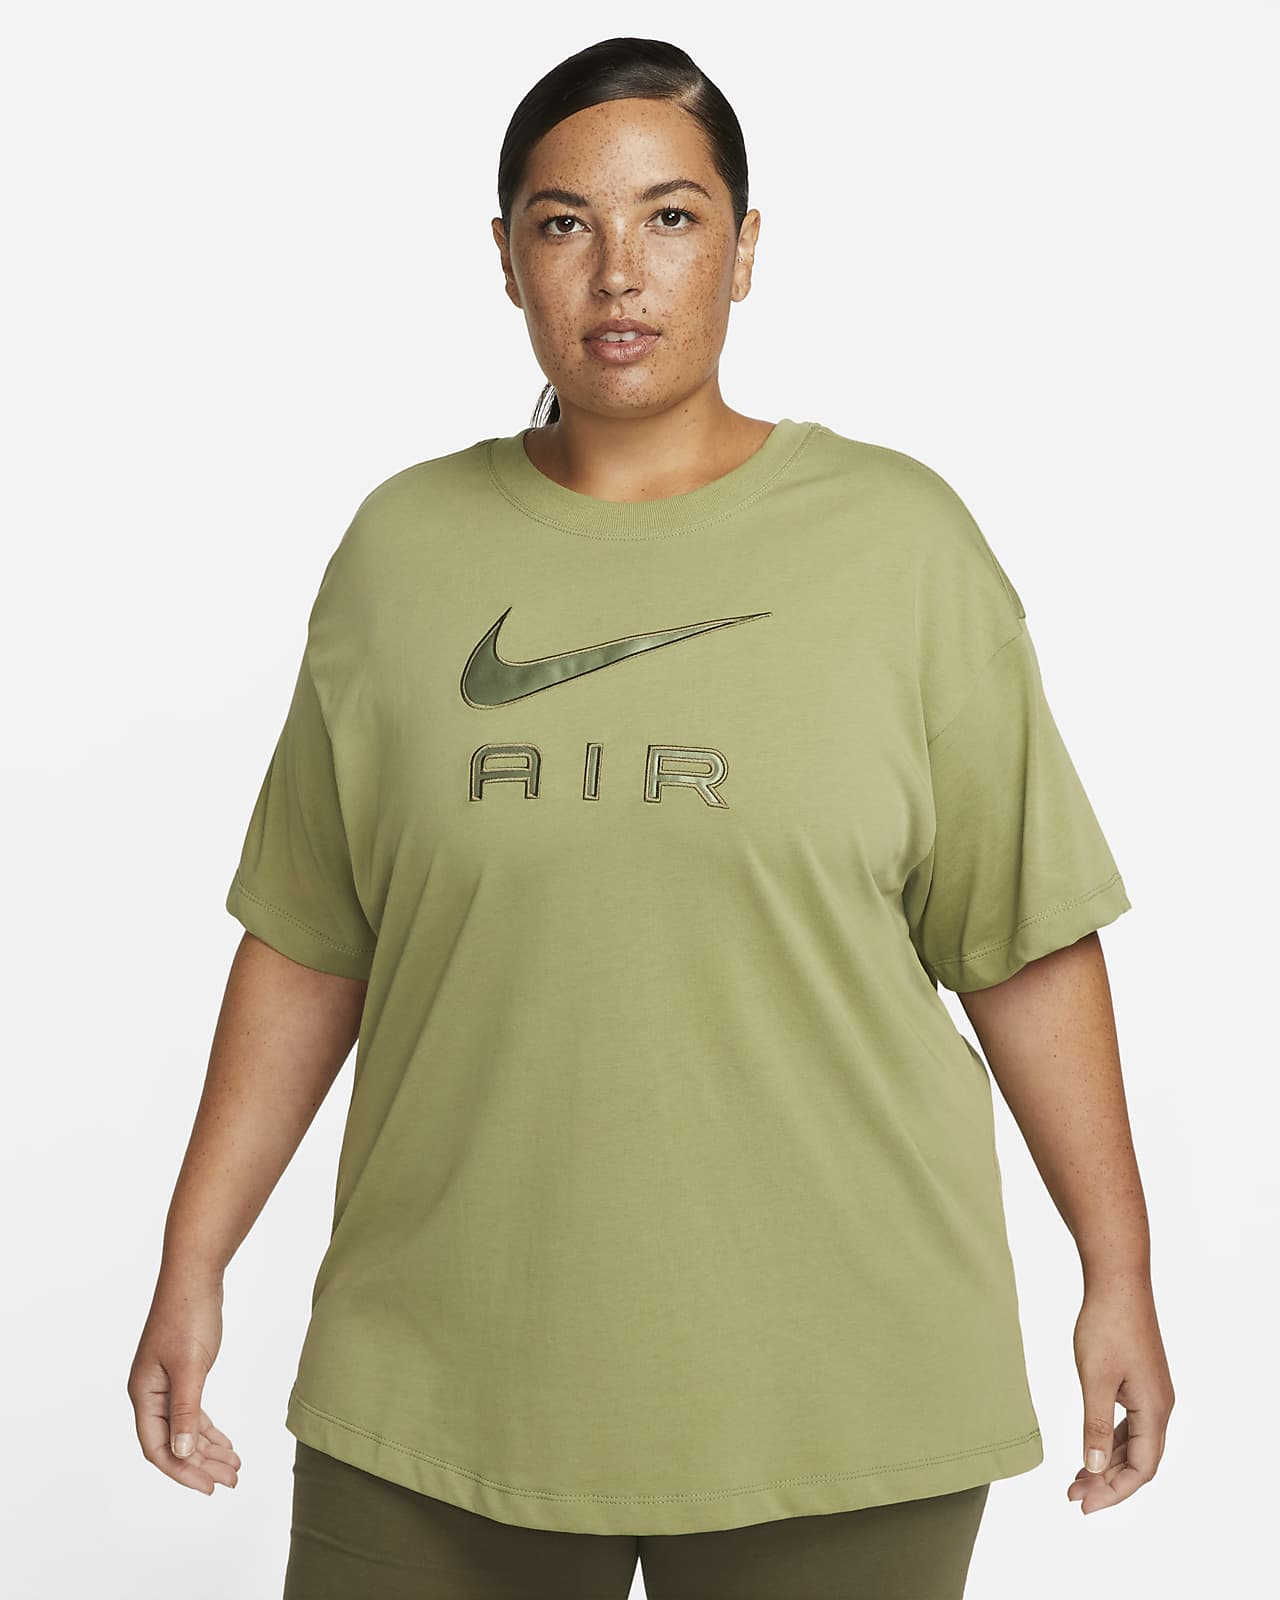 Playera para (talla grande) Air. Nike.com